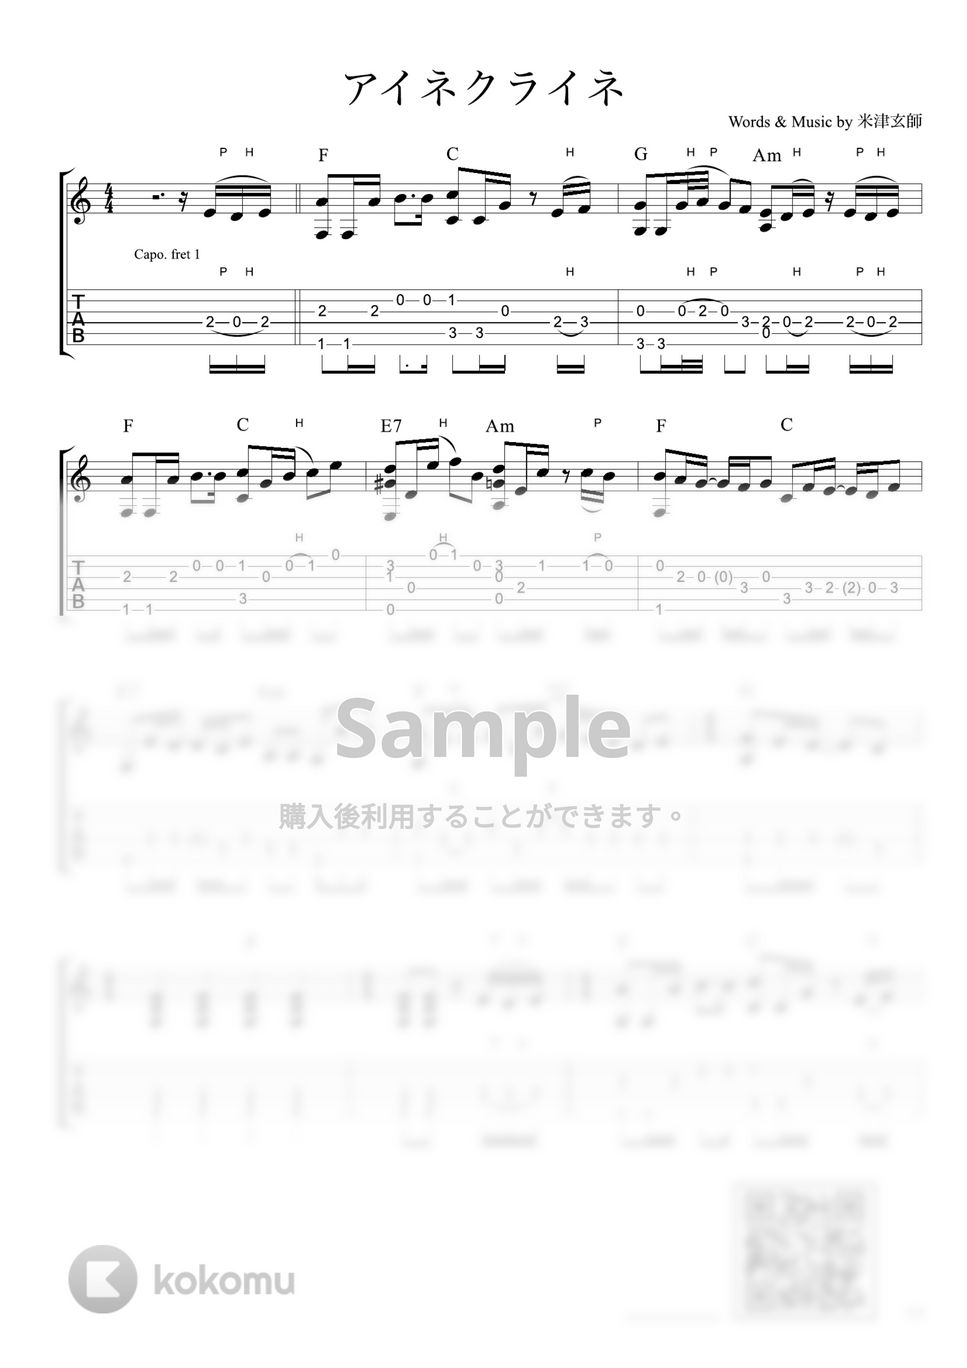 米津玄師 - アイネクライネ (ソロギター / 初級〜中級) by Strings Guitar School